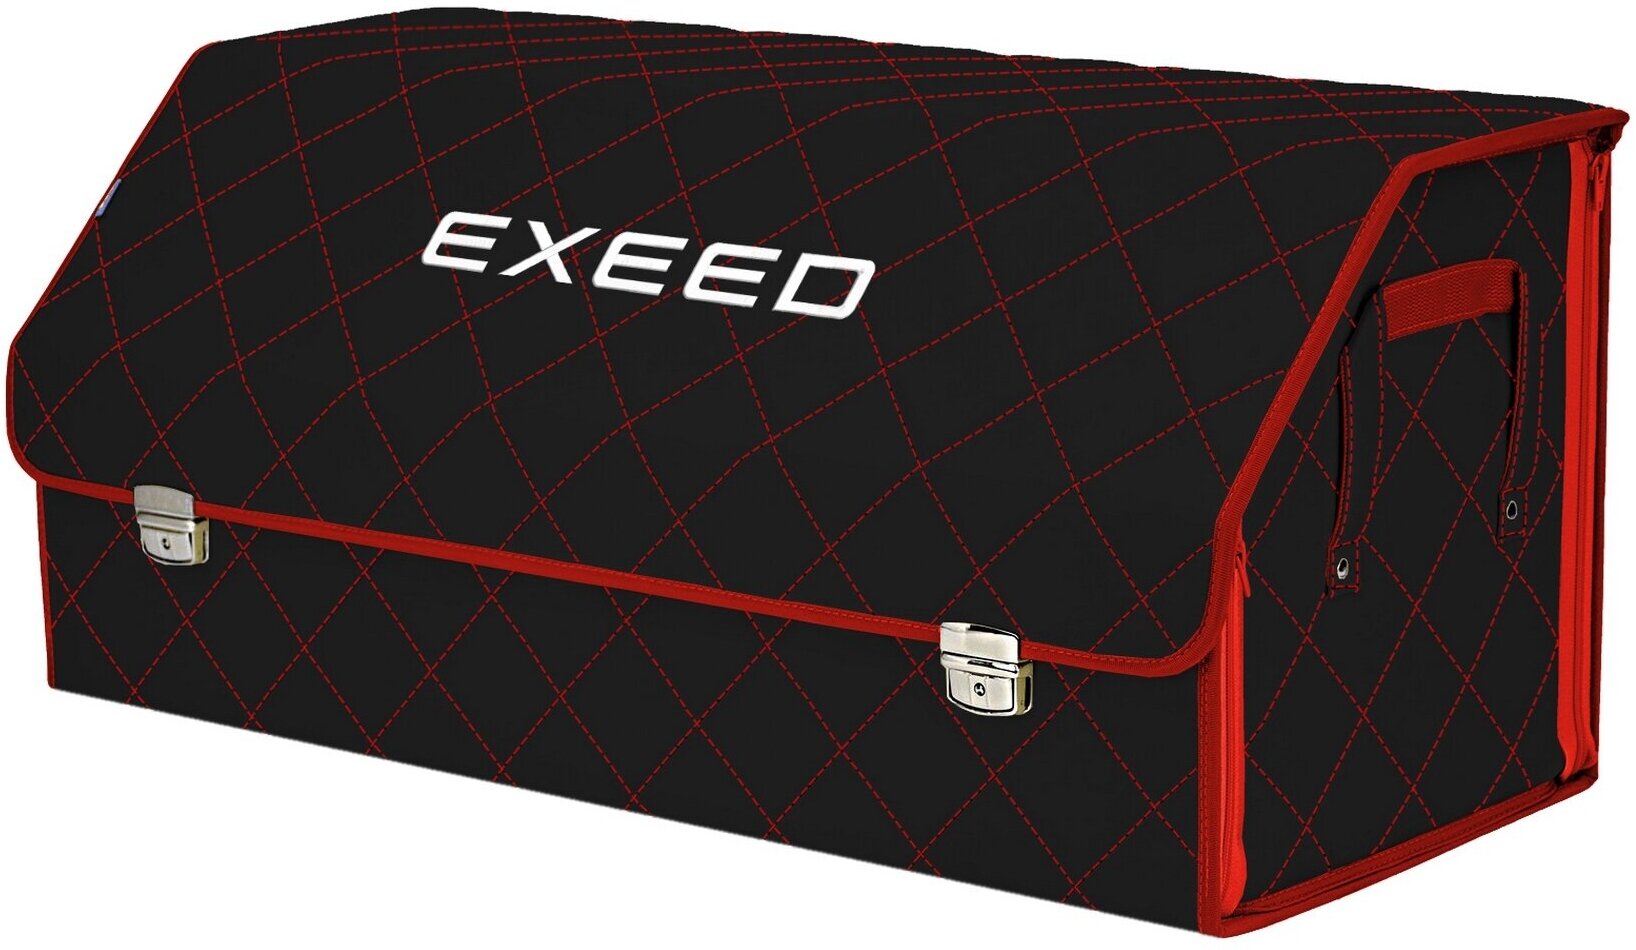 Органайзер-саквояж в багажник "Союз Премиум" (размер XXL). Цвет: черный с красной прострочкой Ромб и вышивкой Exeed (Эксид).